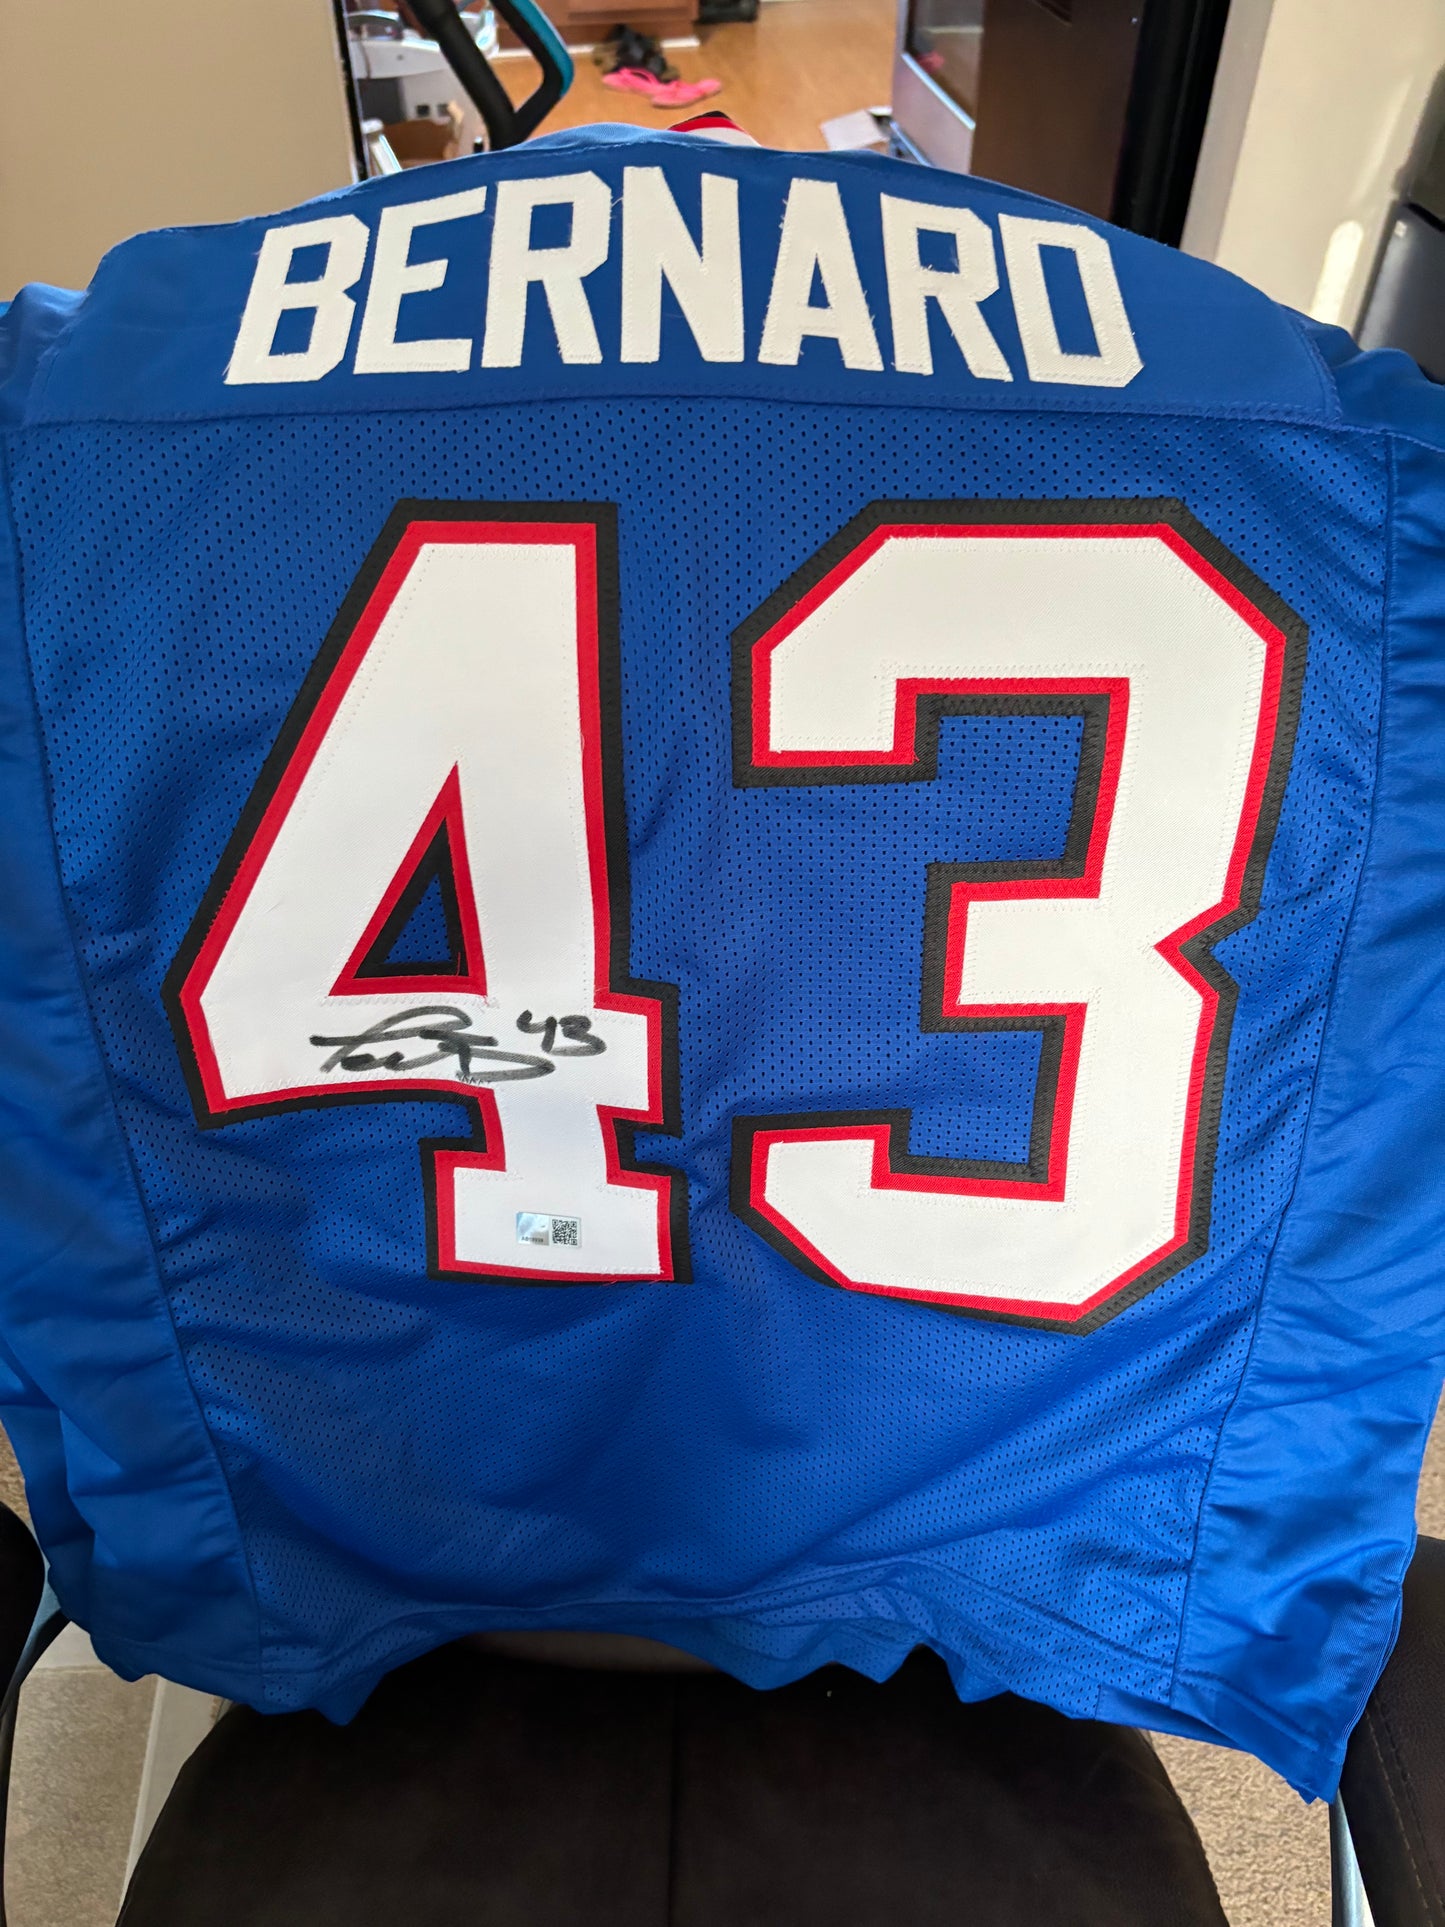 Bernard Signed Jersey